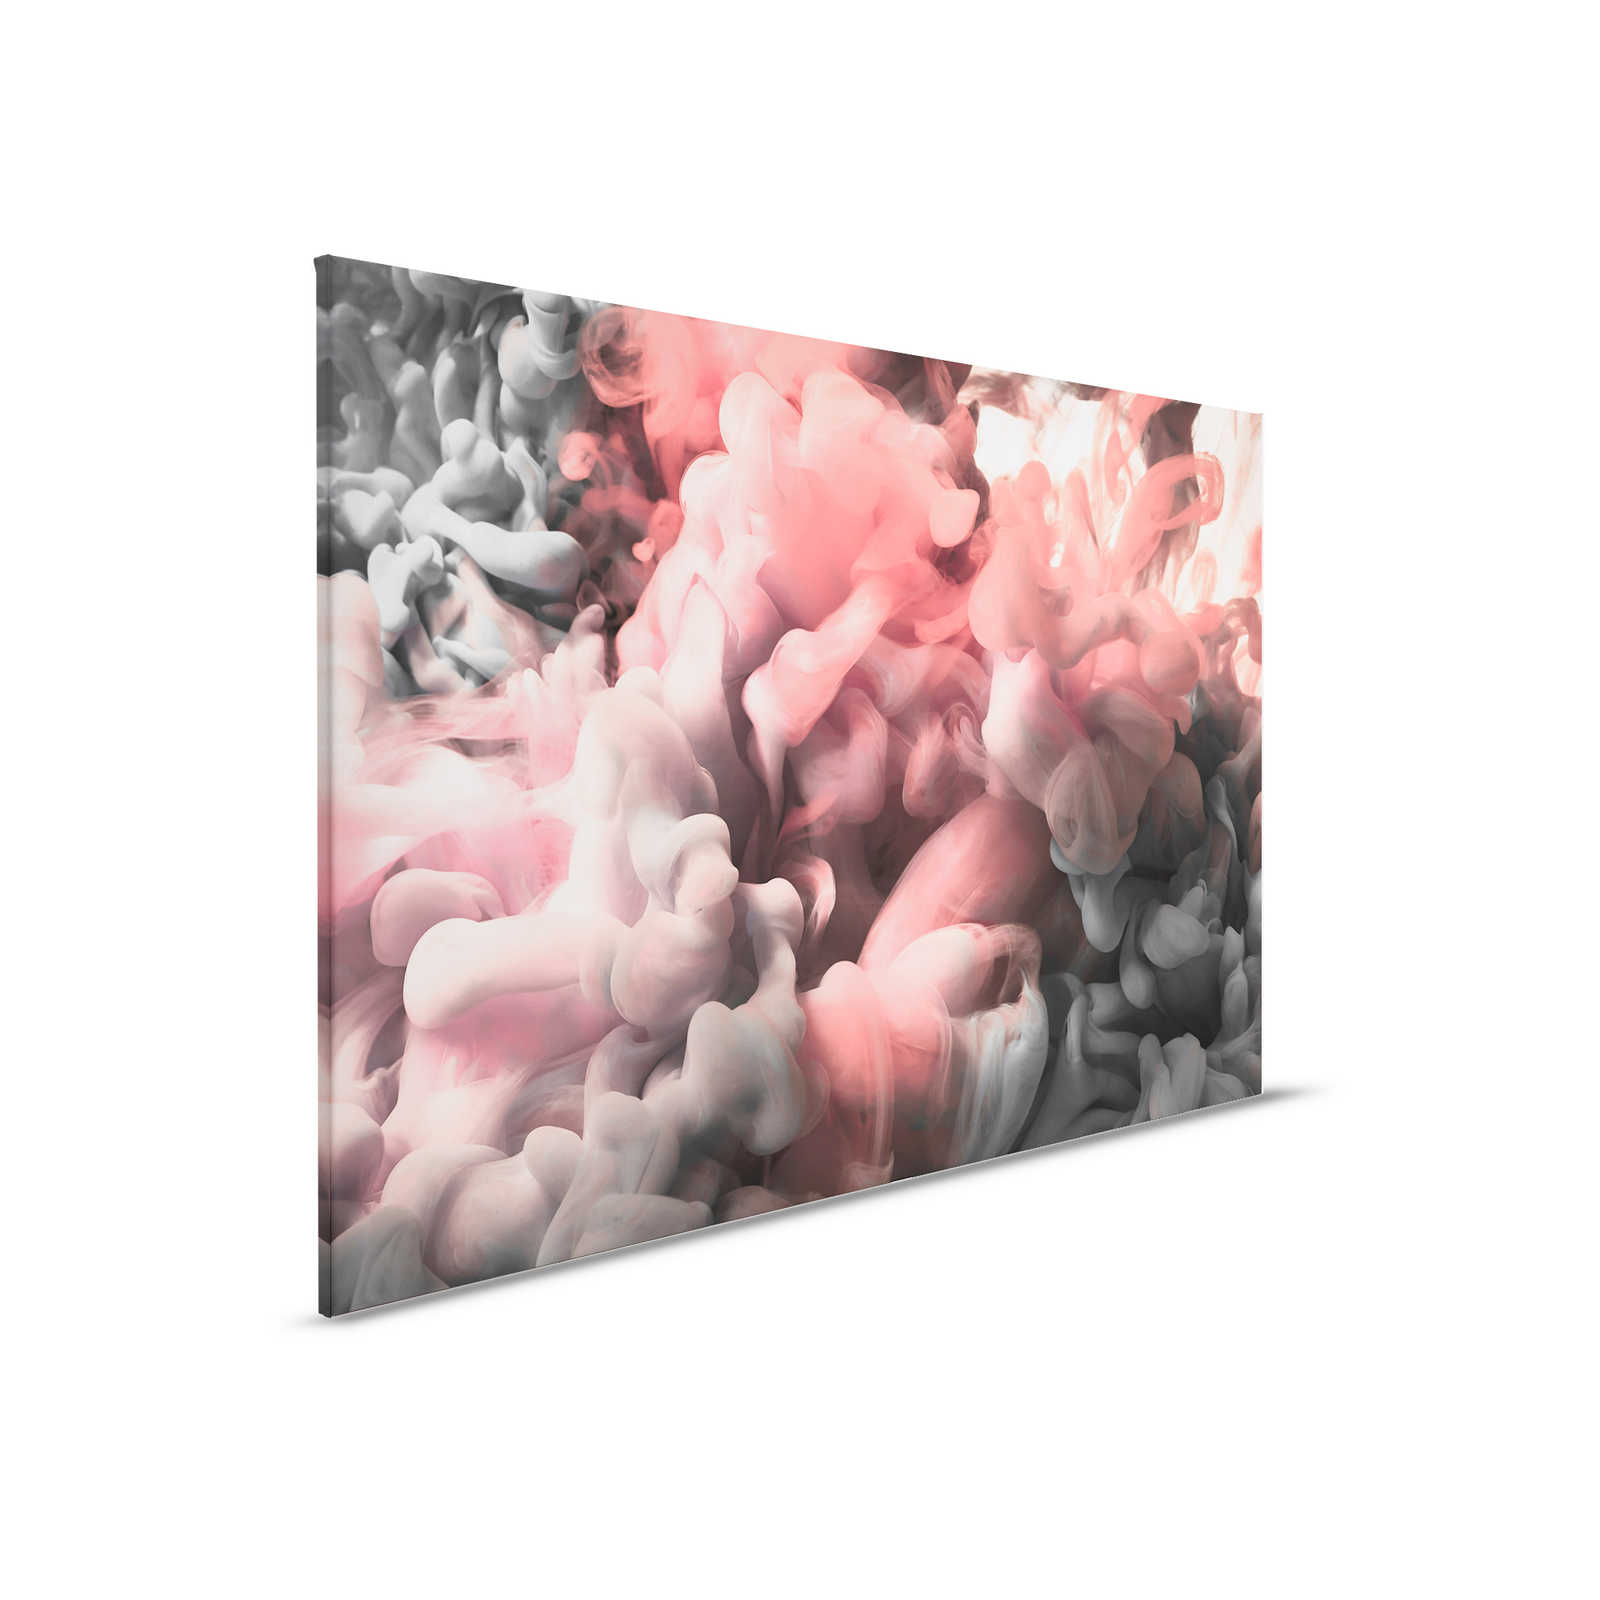 Farbiger Rauch Leinwand | Rosa, Grau, Weiß – 0,90 m x 0,60 m
